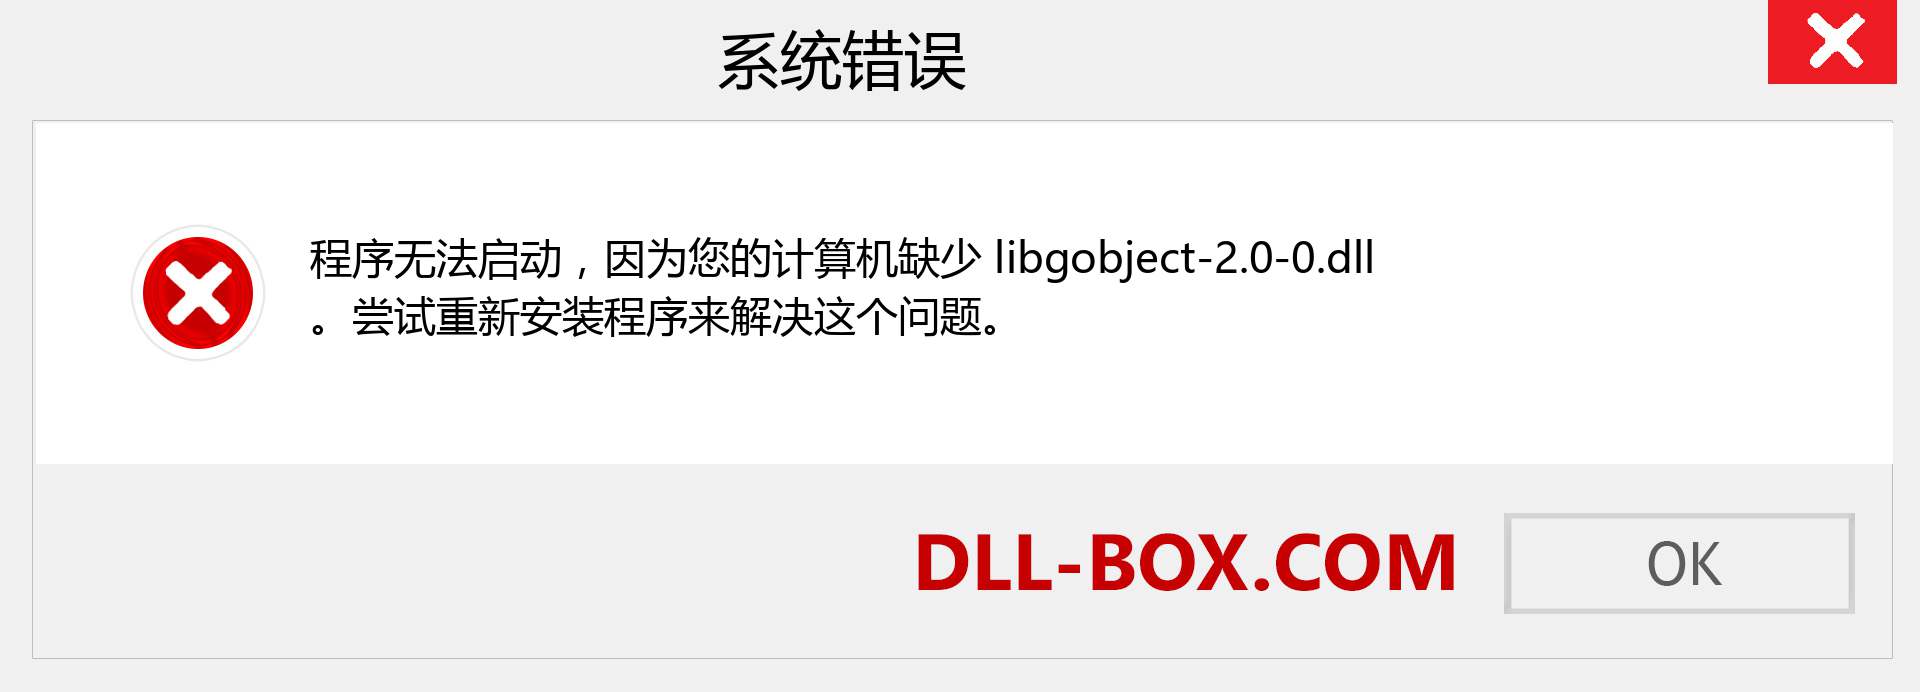 libgobject-2.0-0.dll 文件丢失？。 适用于 Windows 7、8、10 的下载 - 修复 Windows、照片、图像上的 libgobject-2.0-0 dll 丢失错误